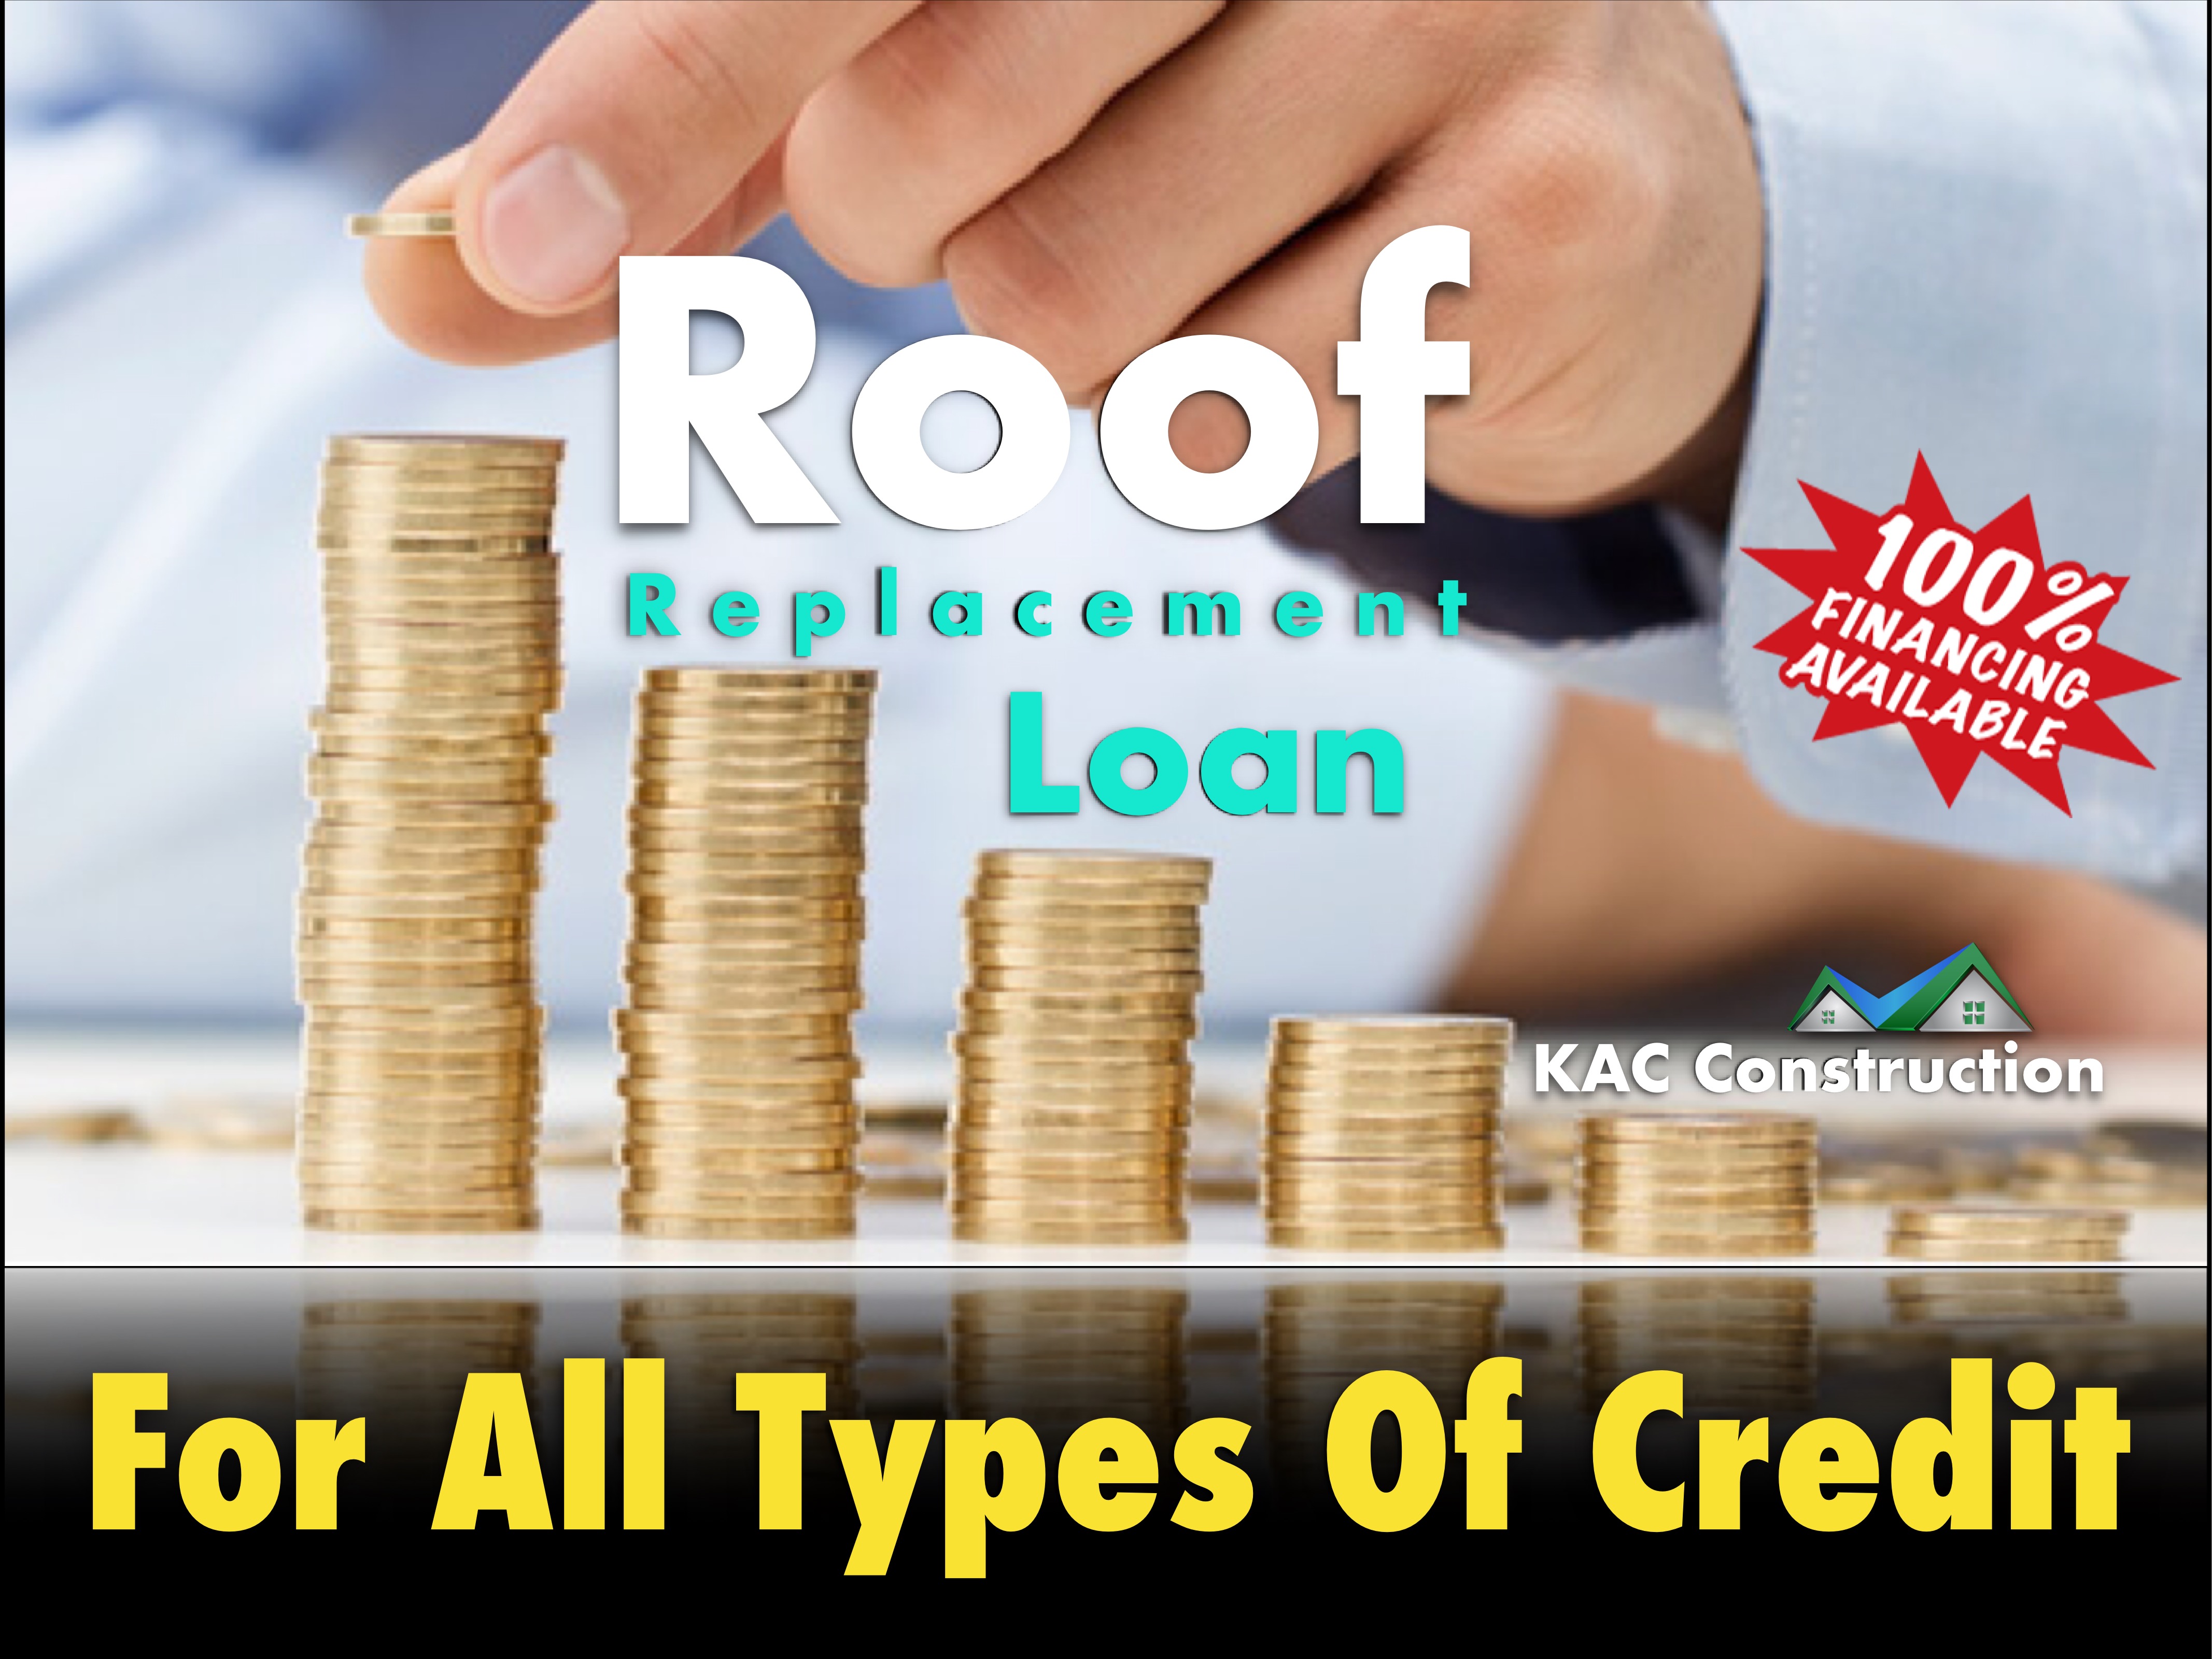 Roofing loan, roofing loan ri. Roofing financing ri, roofing financing in ri, low credit roof loan, low credit roof financing, low credit roof loan ri, low credit roof loans ri